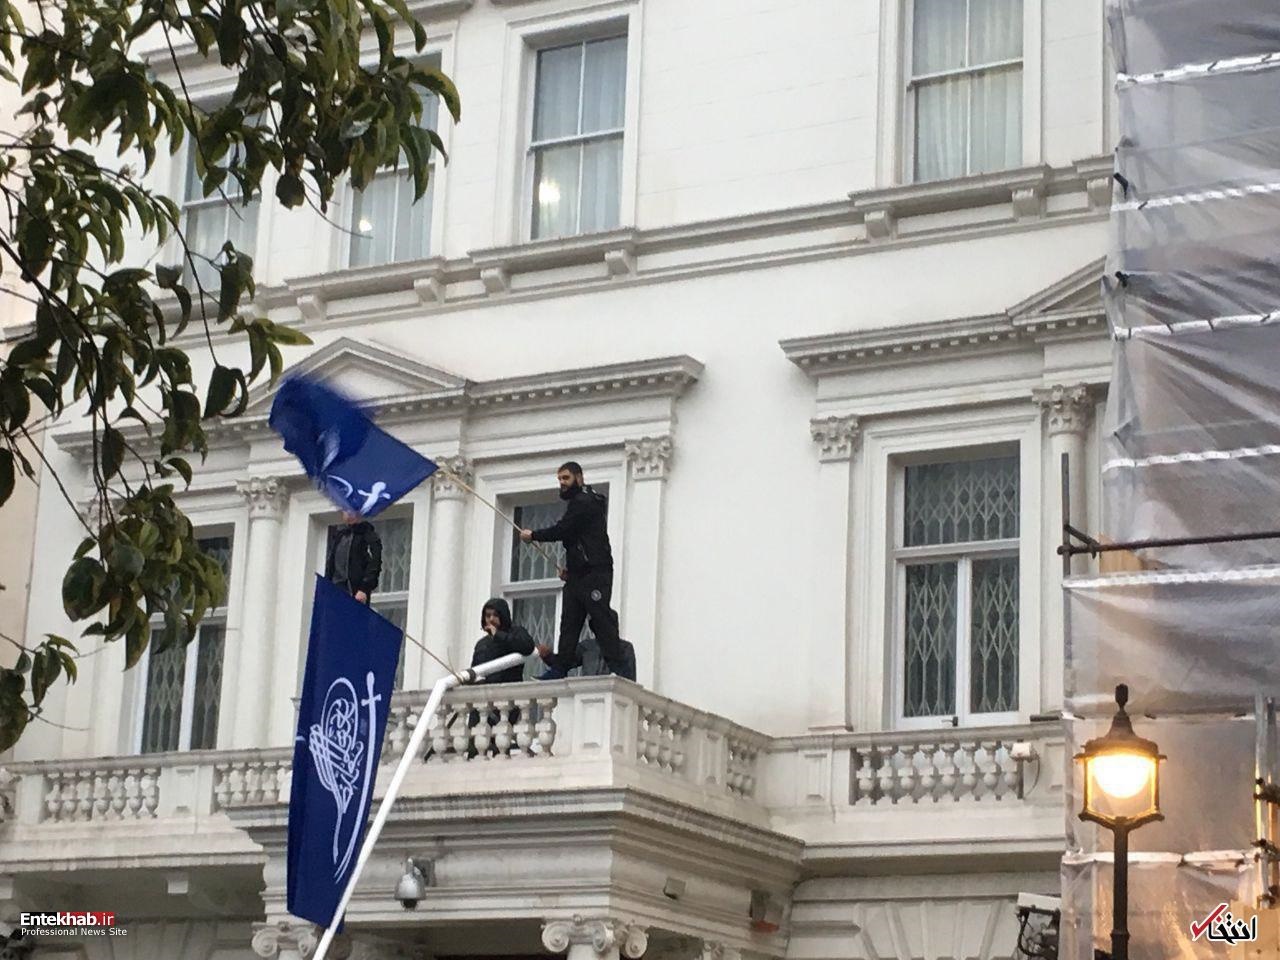 فیلم | تصاویر و اخبار منتشرشده از حمله به سفارت کشورمان در لندن